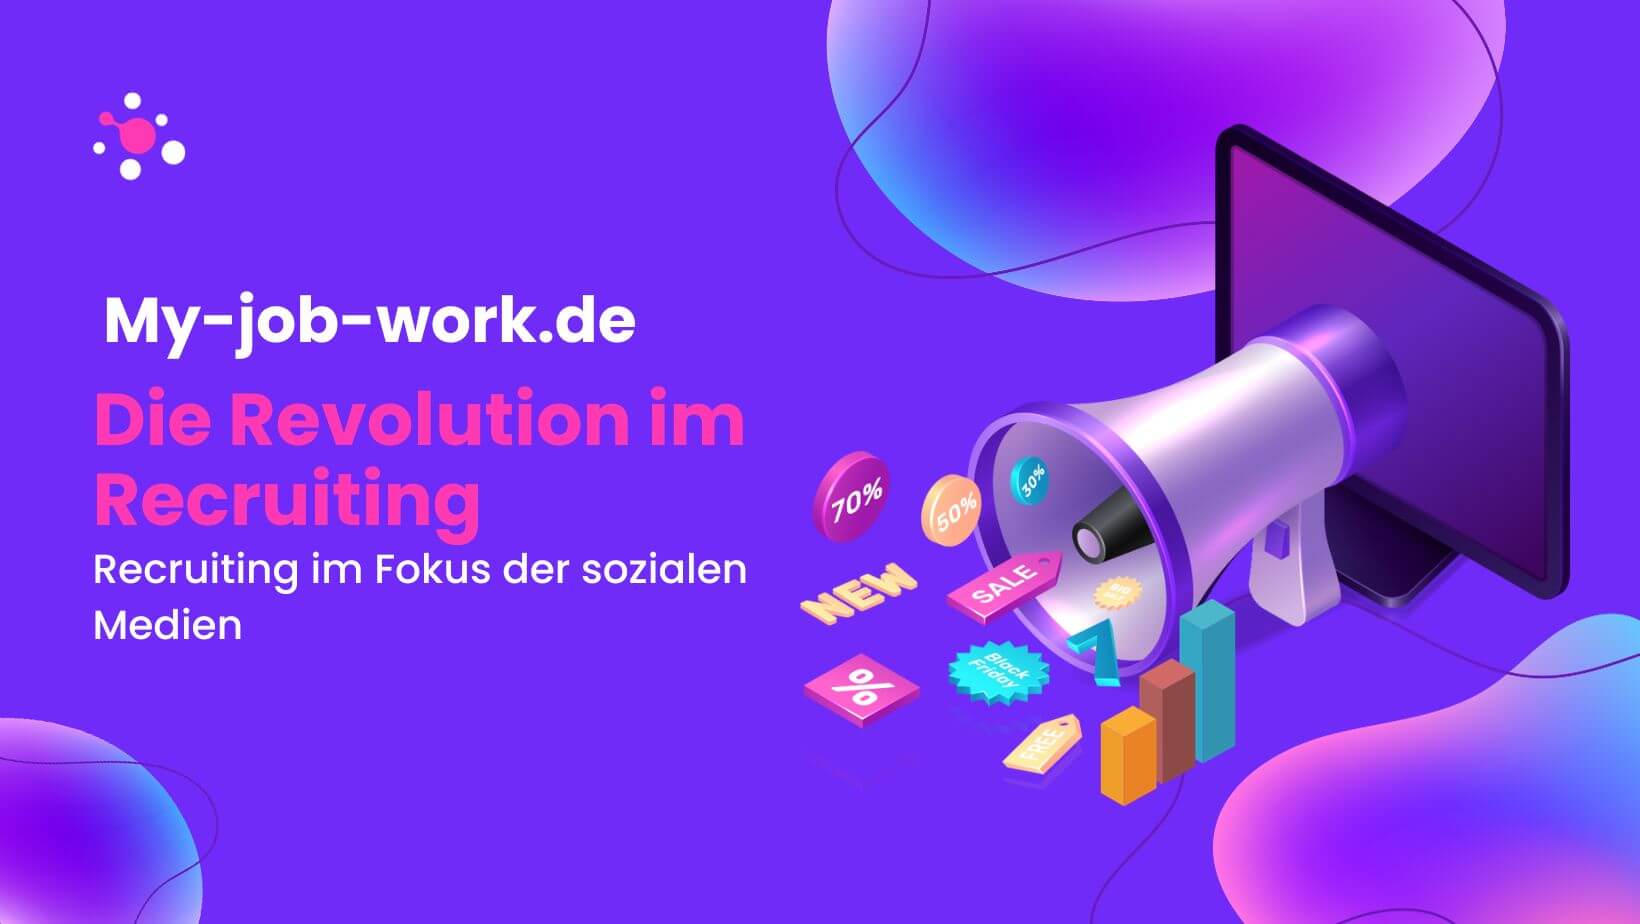 My-job-work.de: Die Revolution im Recruiting